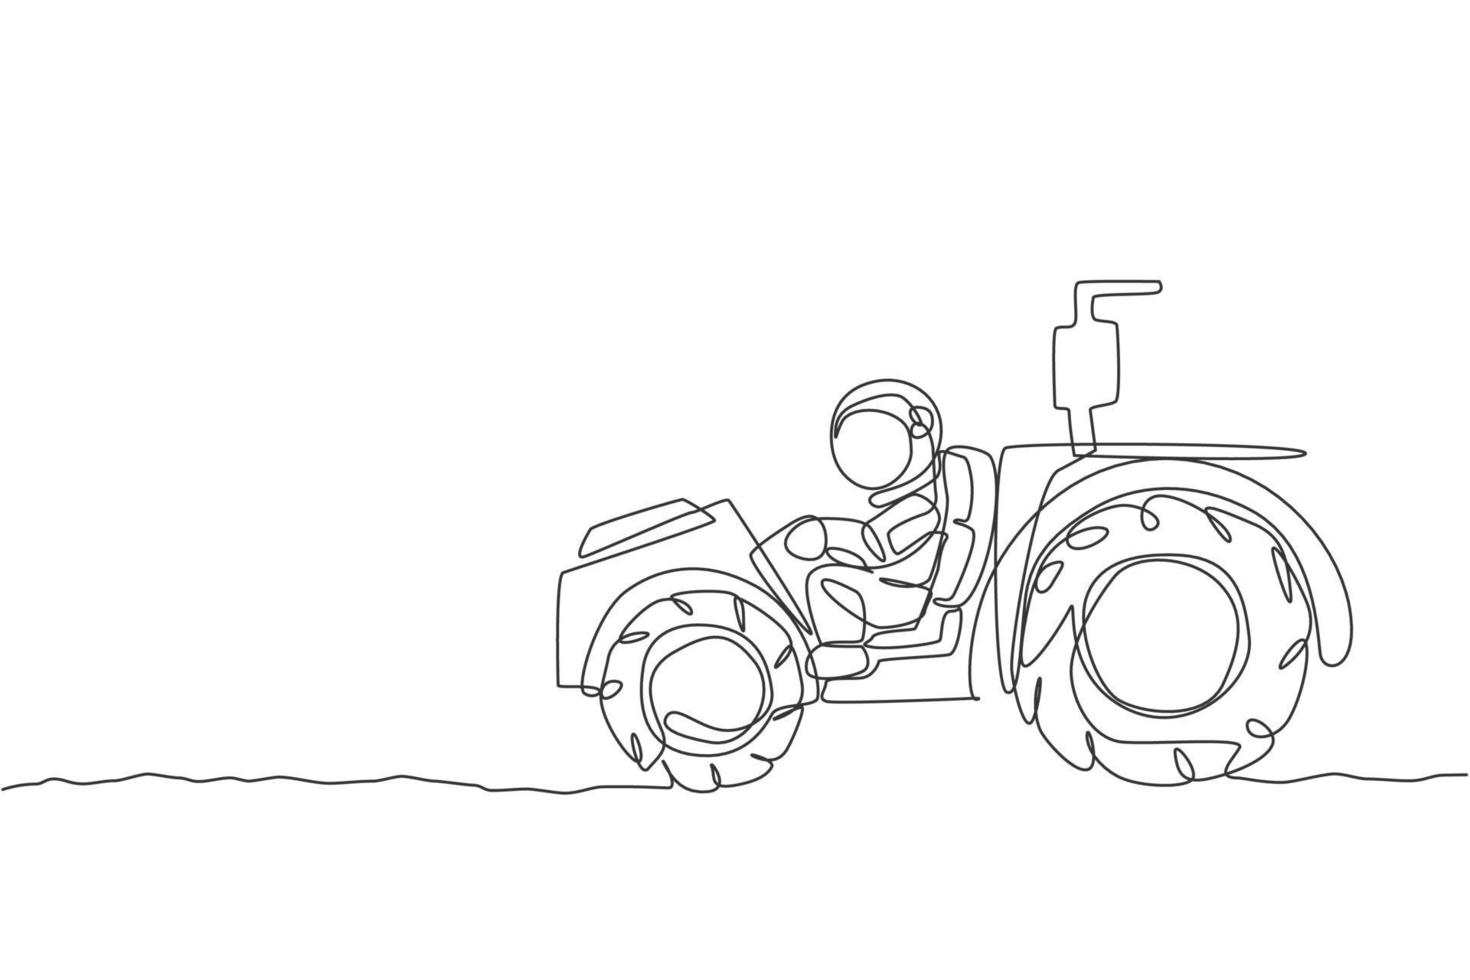 un seul dessin d'astronaute chevauchant un tracteur pour niveler et aplatir le sol dans l'illustration vectorielle de la surface de la lune. concept d'agriculture spatiale. conception de dessin graphique en ligne continue moderne vecteur